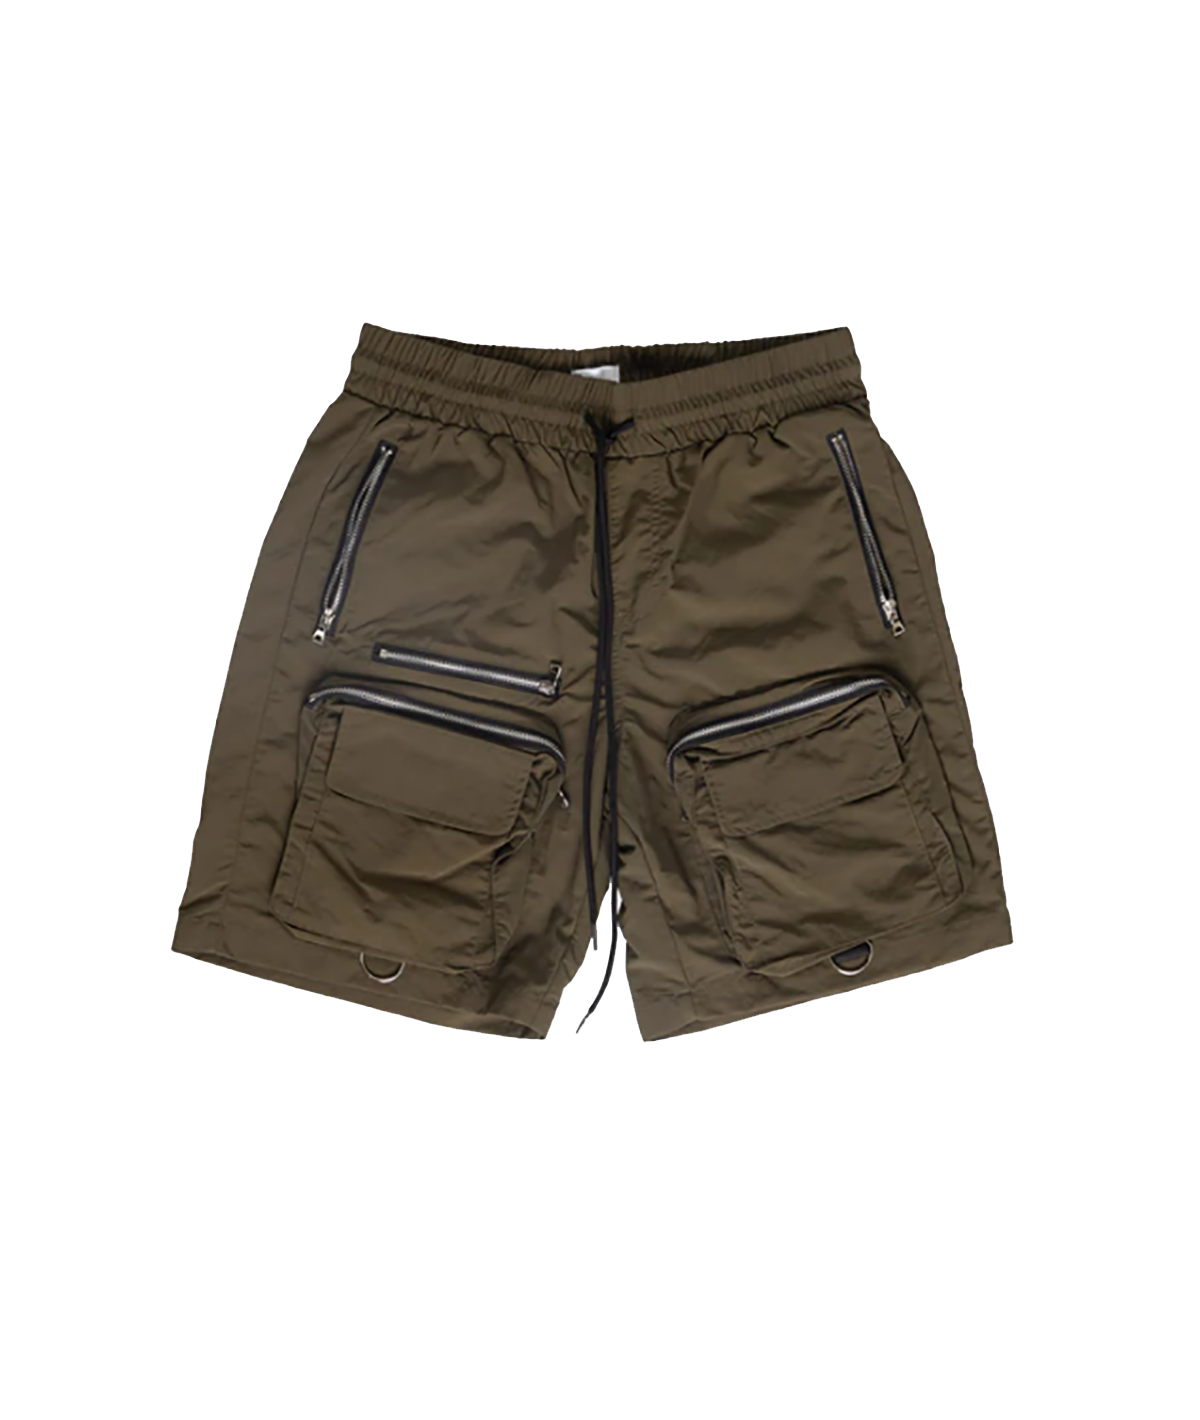 EPTM Bomber Shorts “Olive”